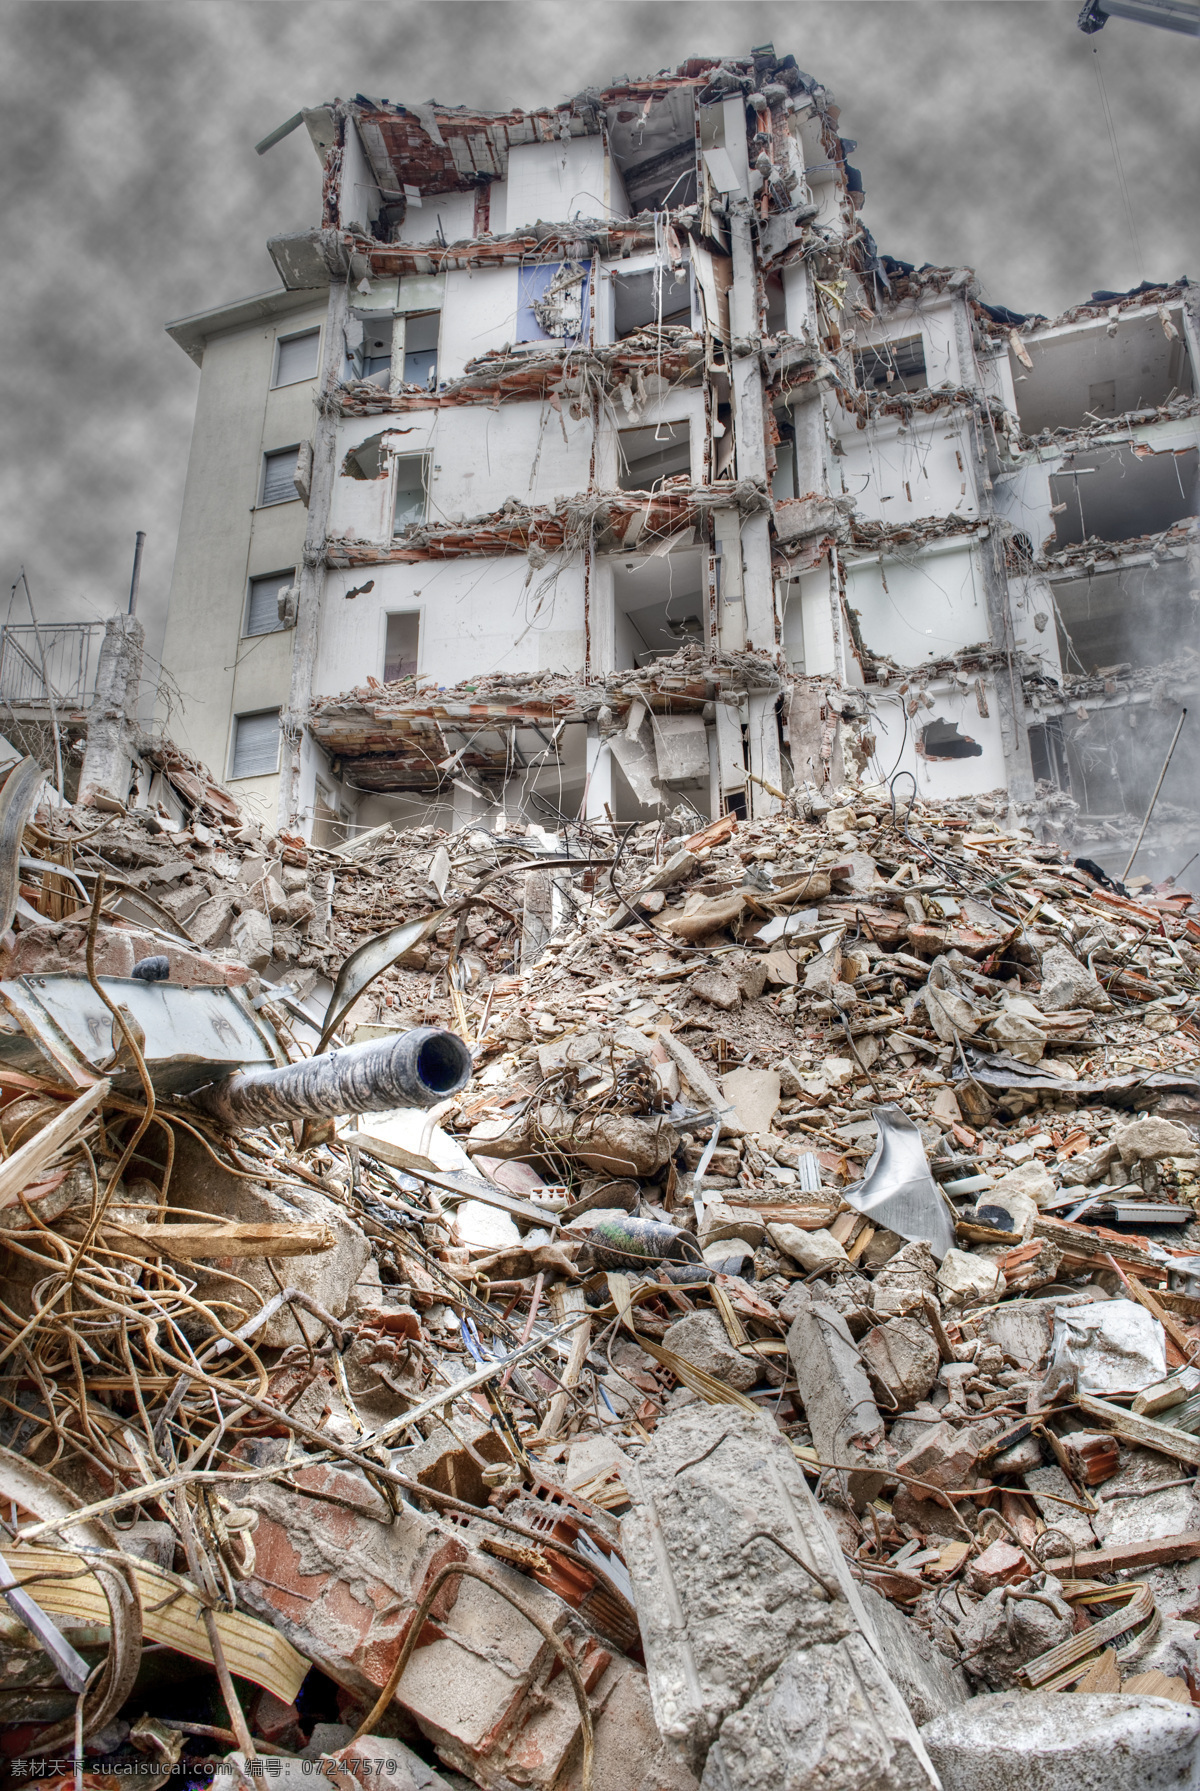 地震 灾难 后 房屋 垮塌的房屋 倒塌 房子 建筑 坍塌的建筑 坍塌的房子 废弃房子 废弃建筑 其他类别 环境家居